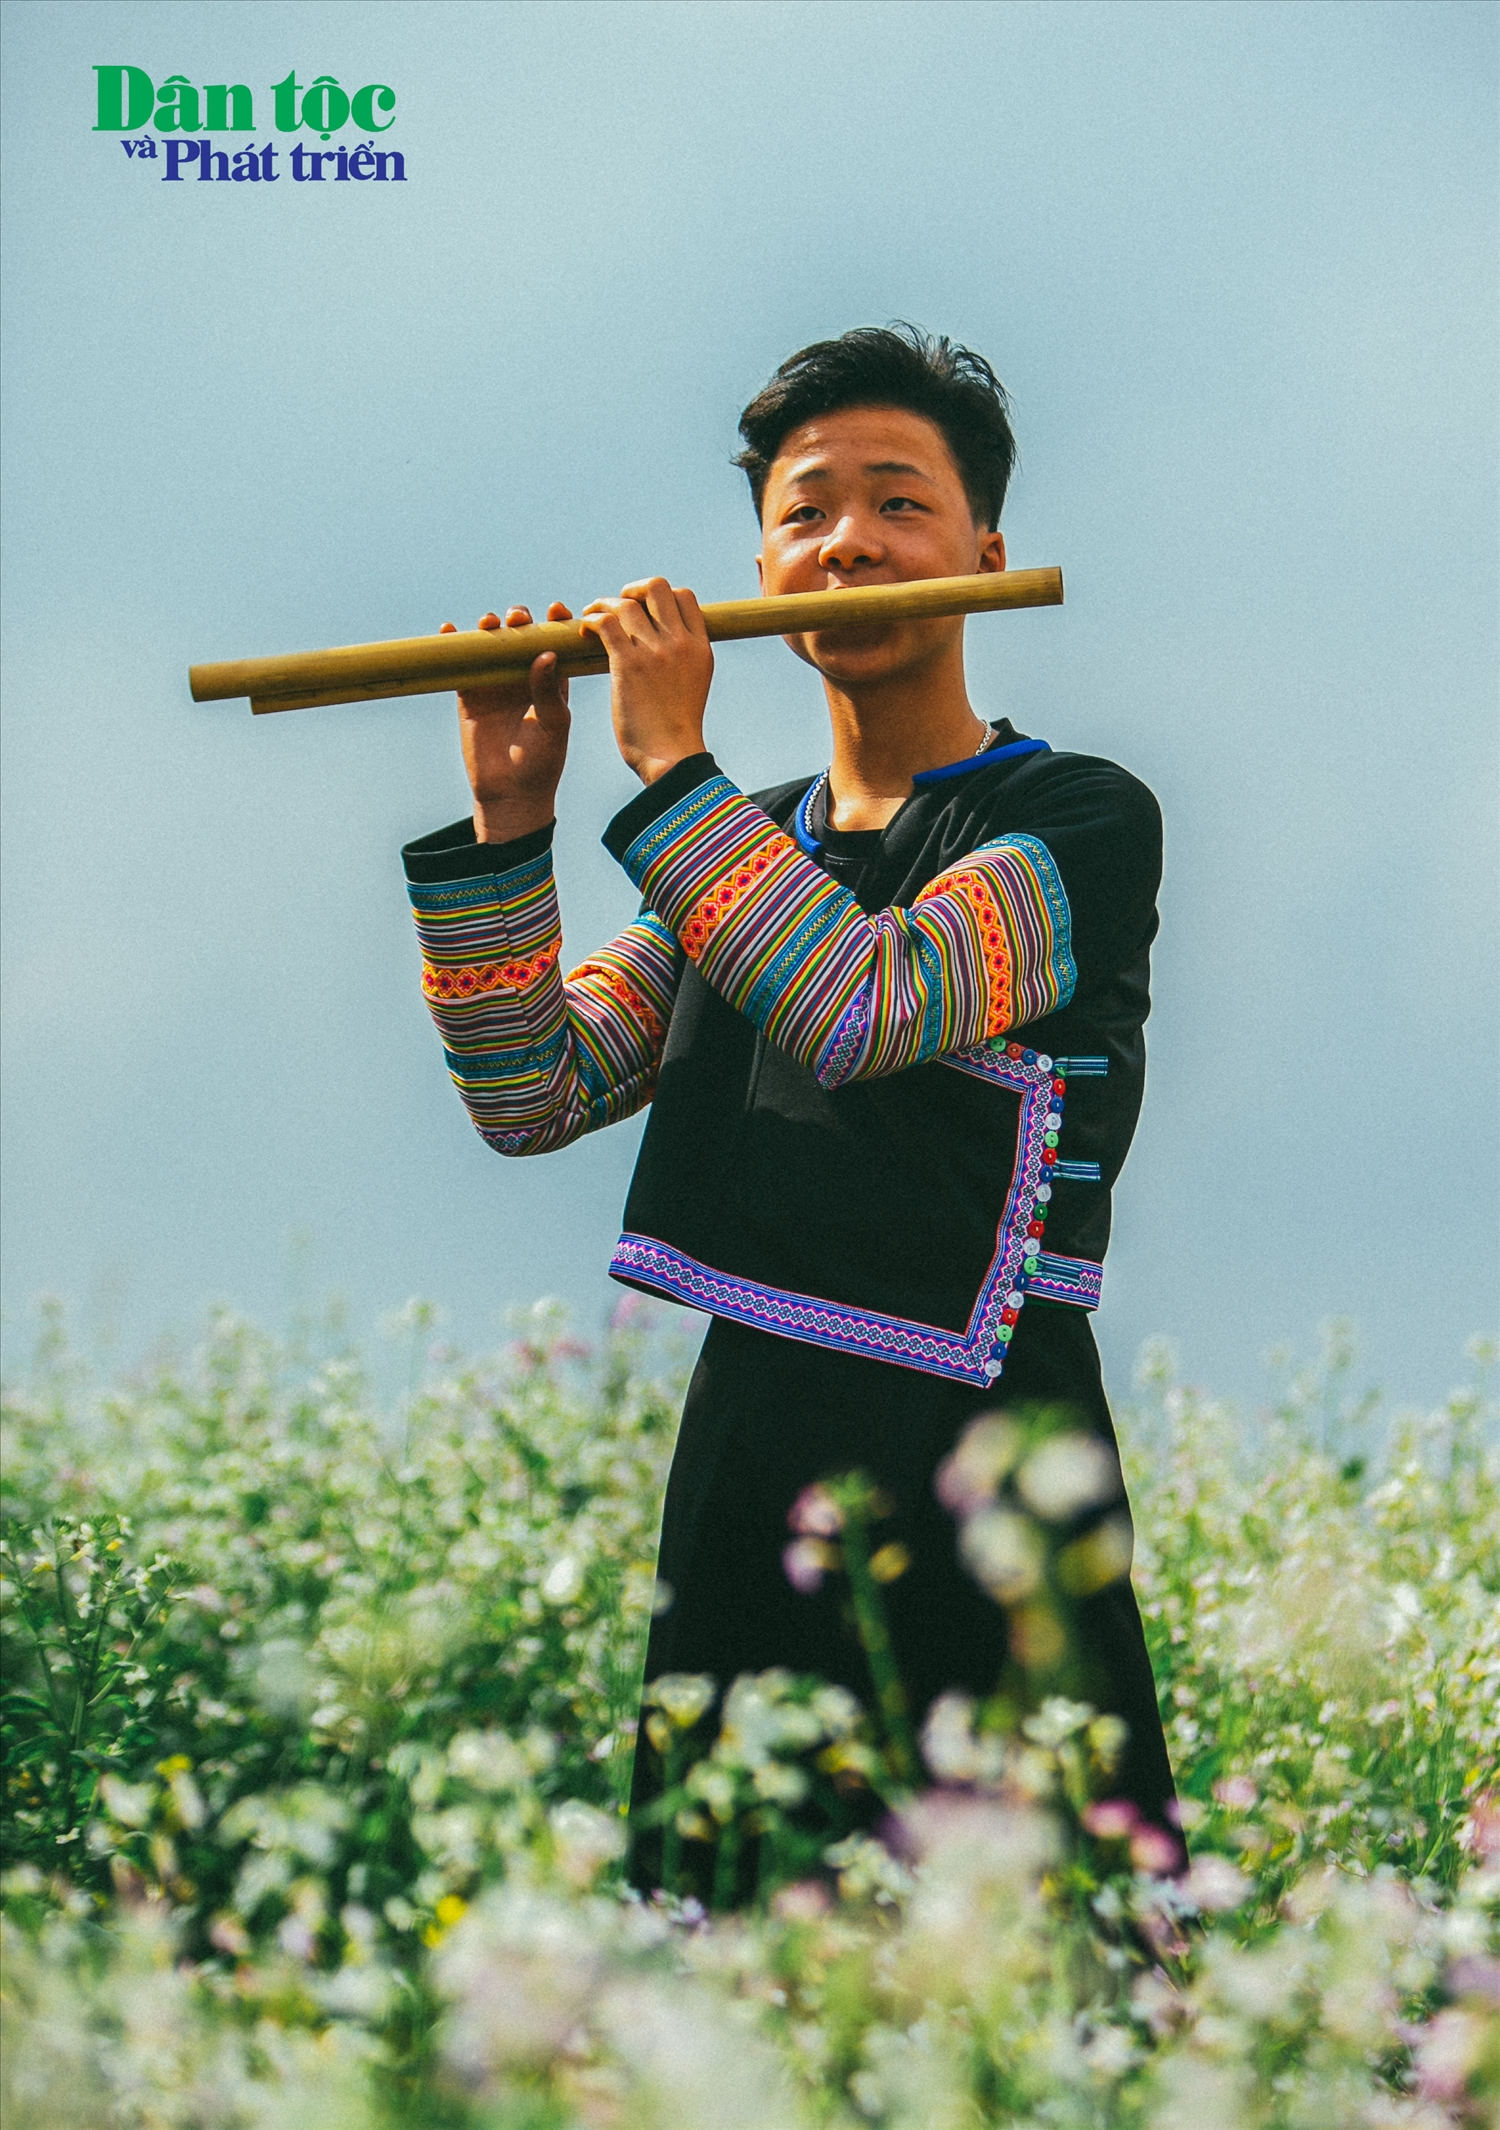 Em Vàng A Tu, học sinh lớp học “bà Liên” thổi hồn cùng cây sáo truyền thống